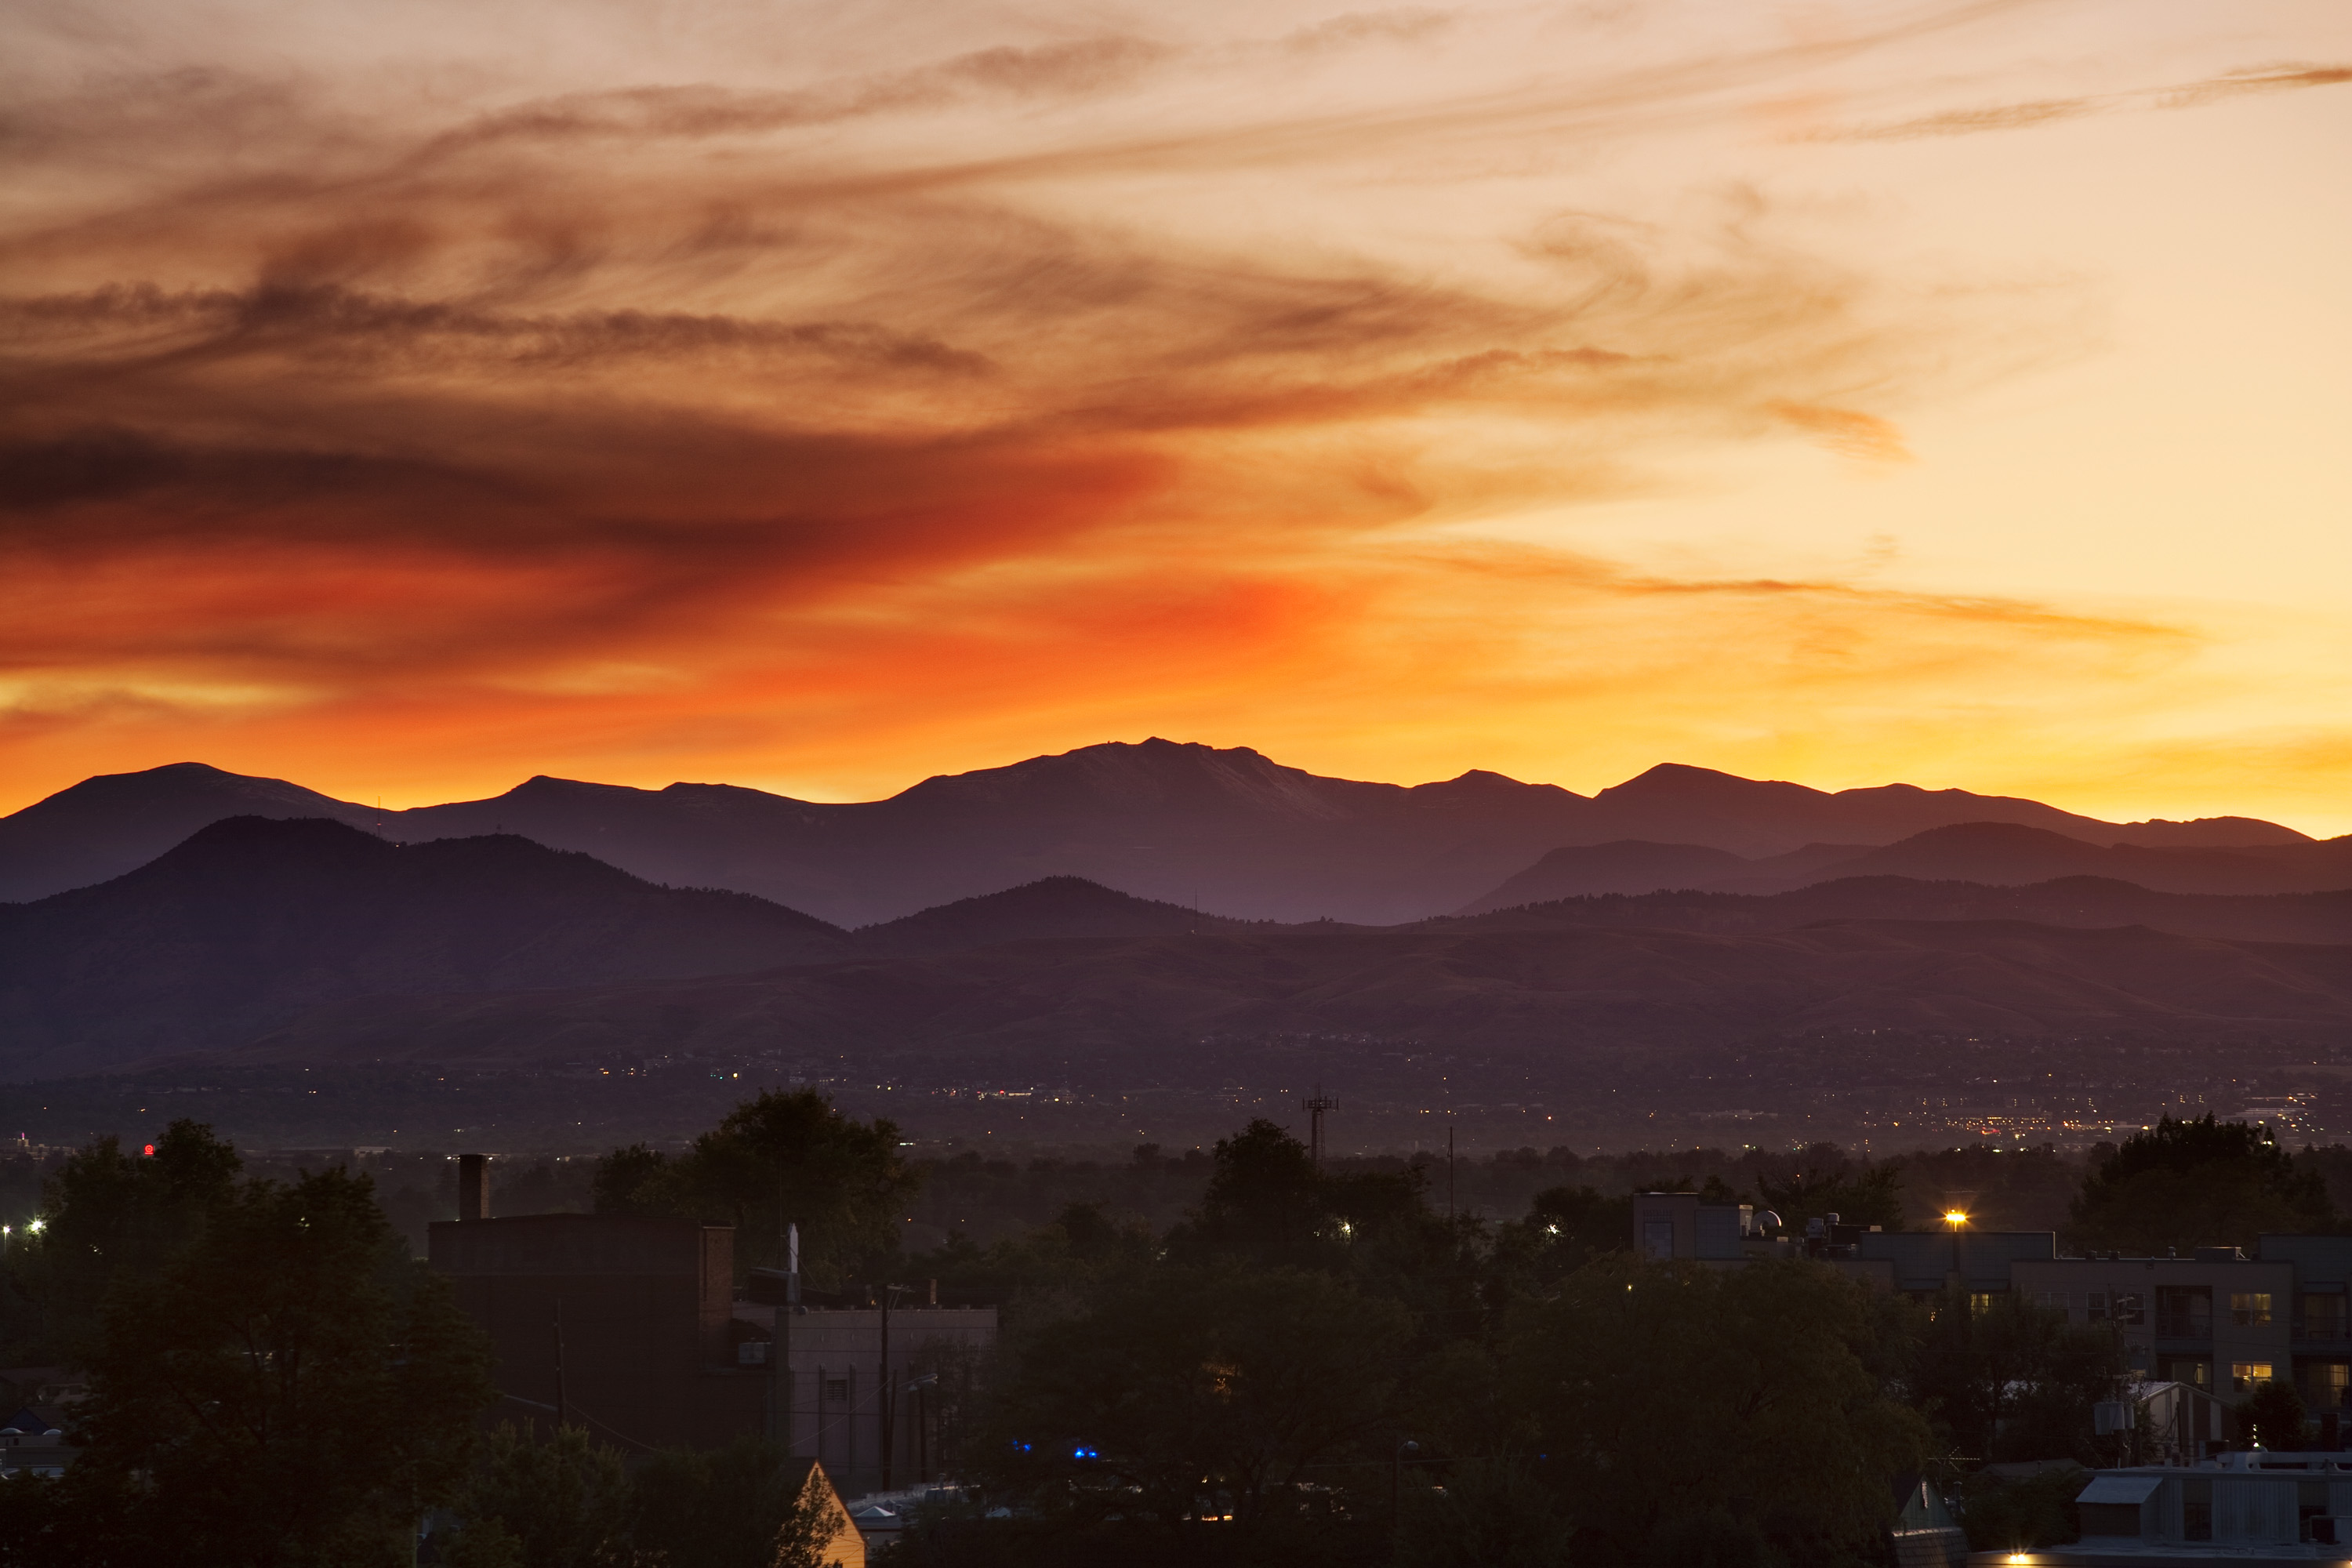 Mount Evans sunset - September 22, 2011